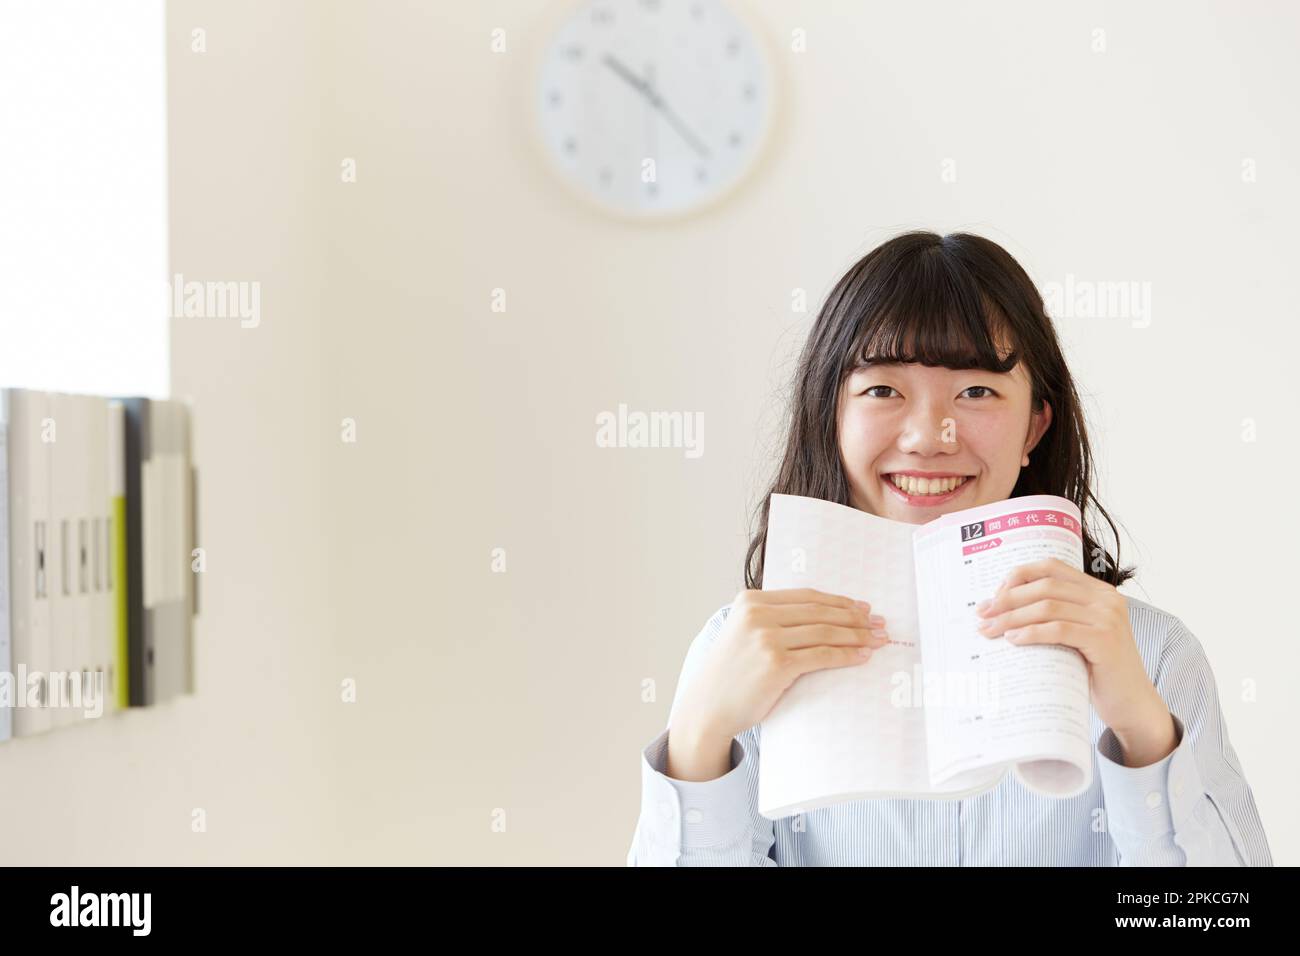 Ein Highschool-Mädchen, das ein Nachschlagewerk hält, mit beiden Händen und lächelnd Stockfoto